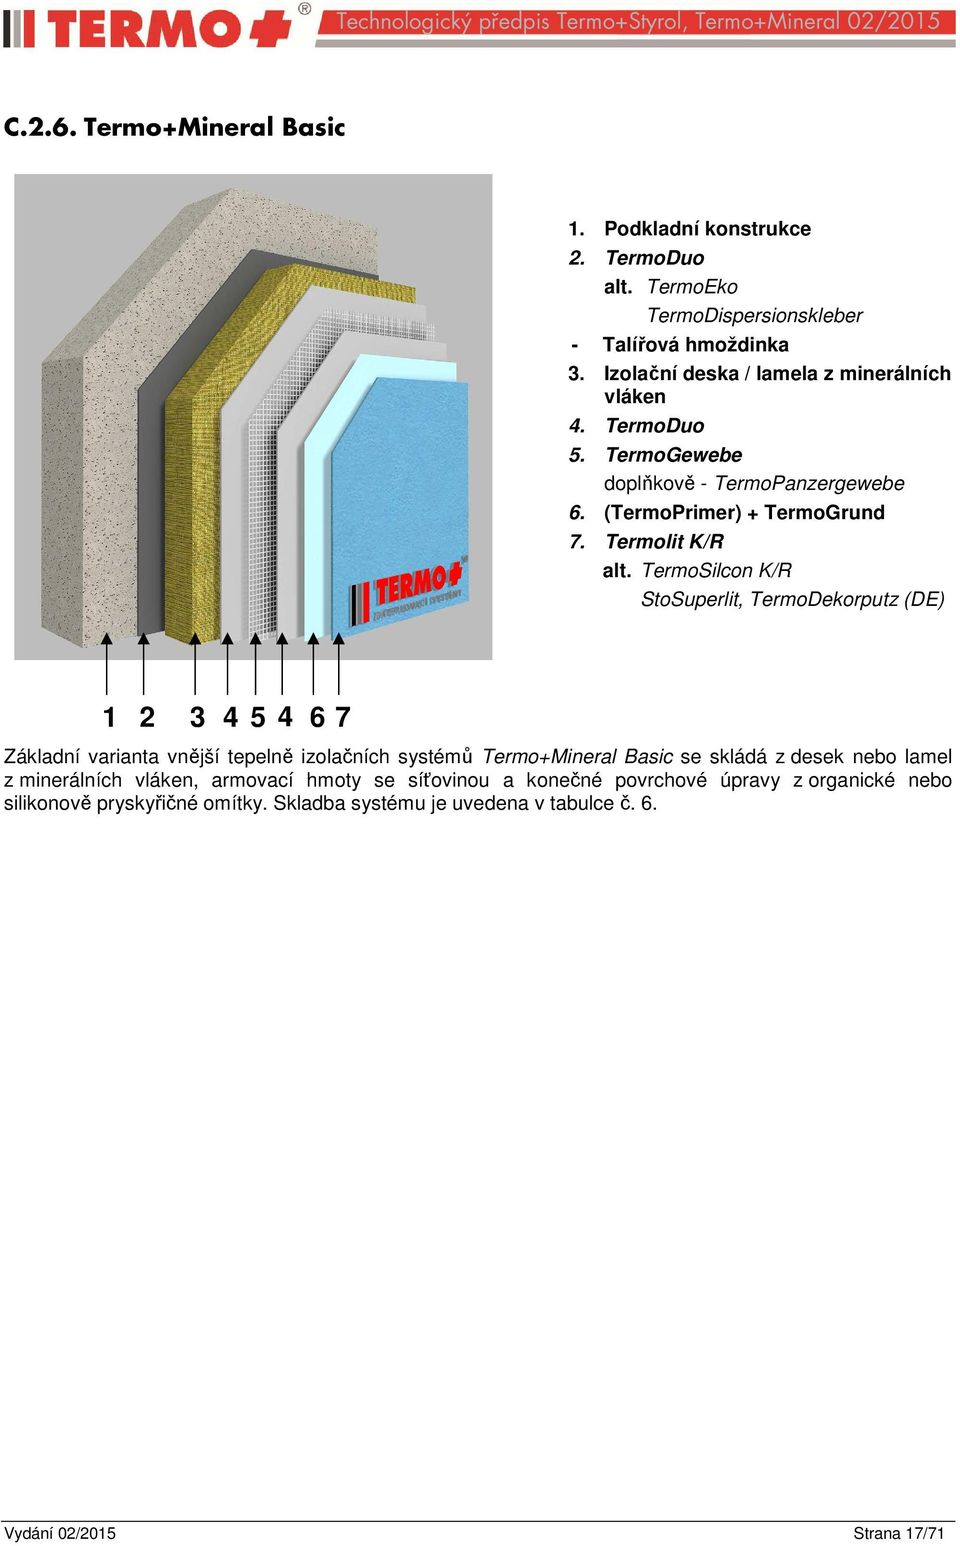 TermoSilcon K/R StoSuperlit, TermoDekorputz (DE) 1 2 3 4 5 4 6 7 Základní varianta vnější tepelně izolačních systémů Termo+Mineral Basic se skládá z desek nebo